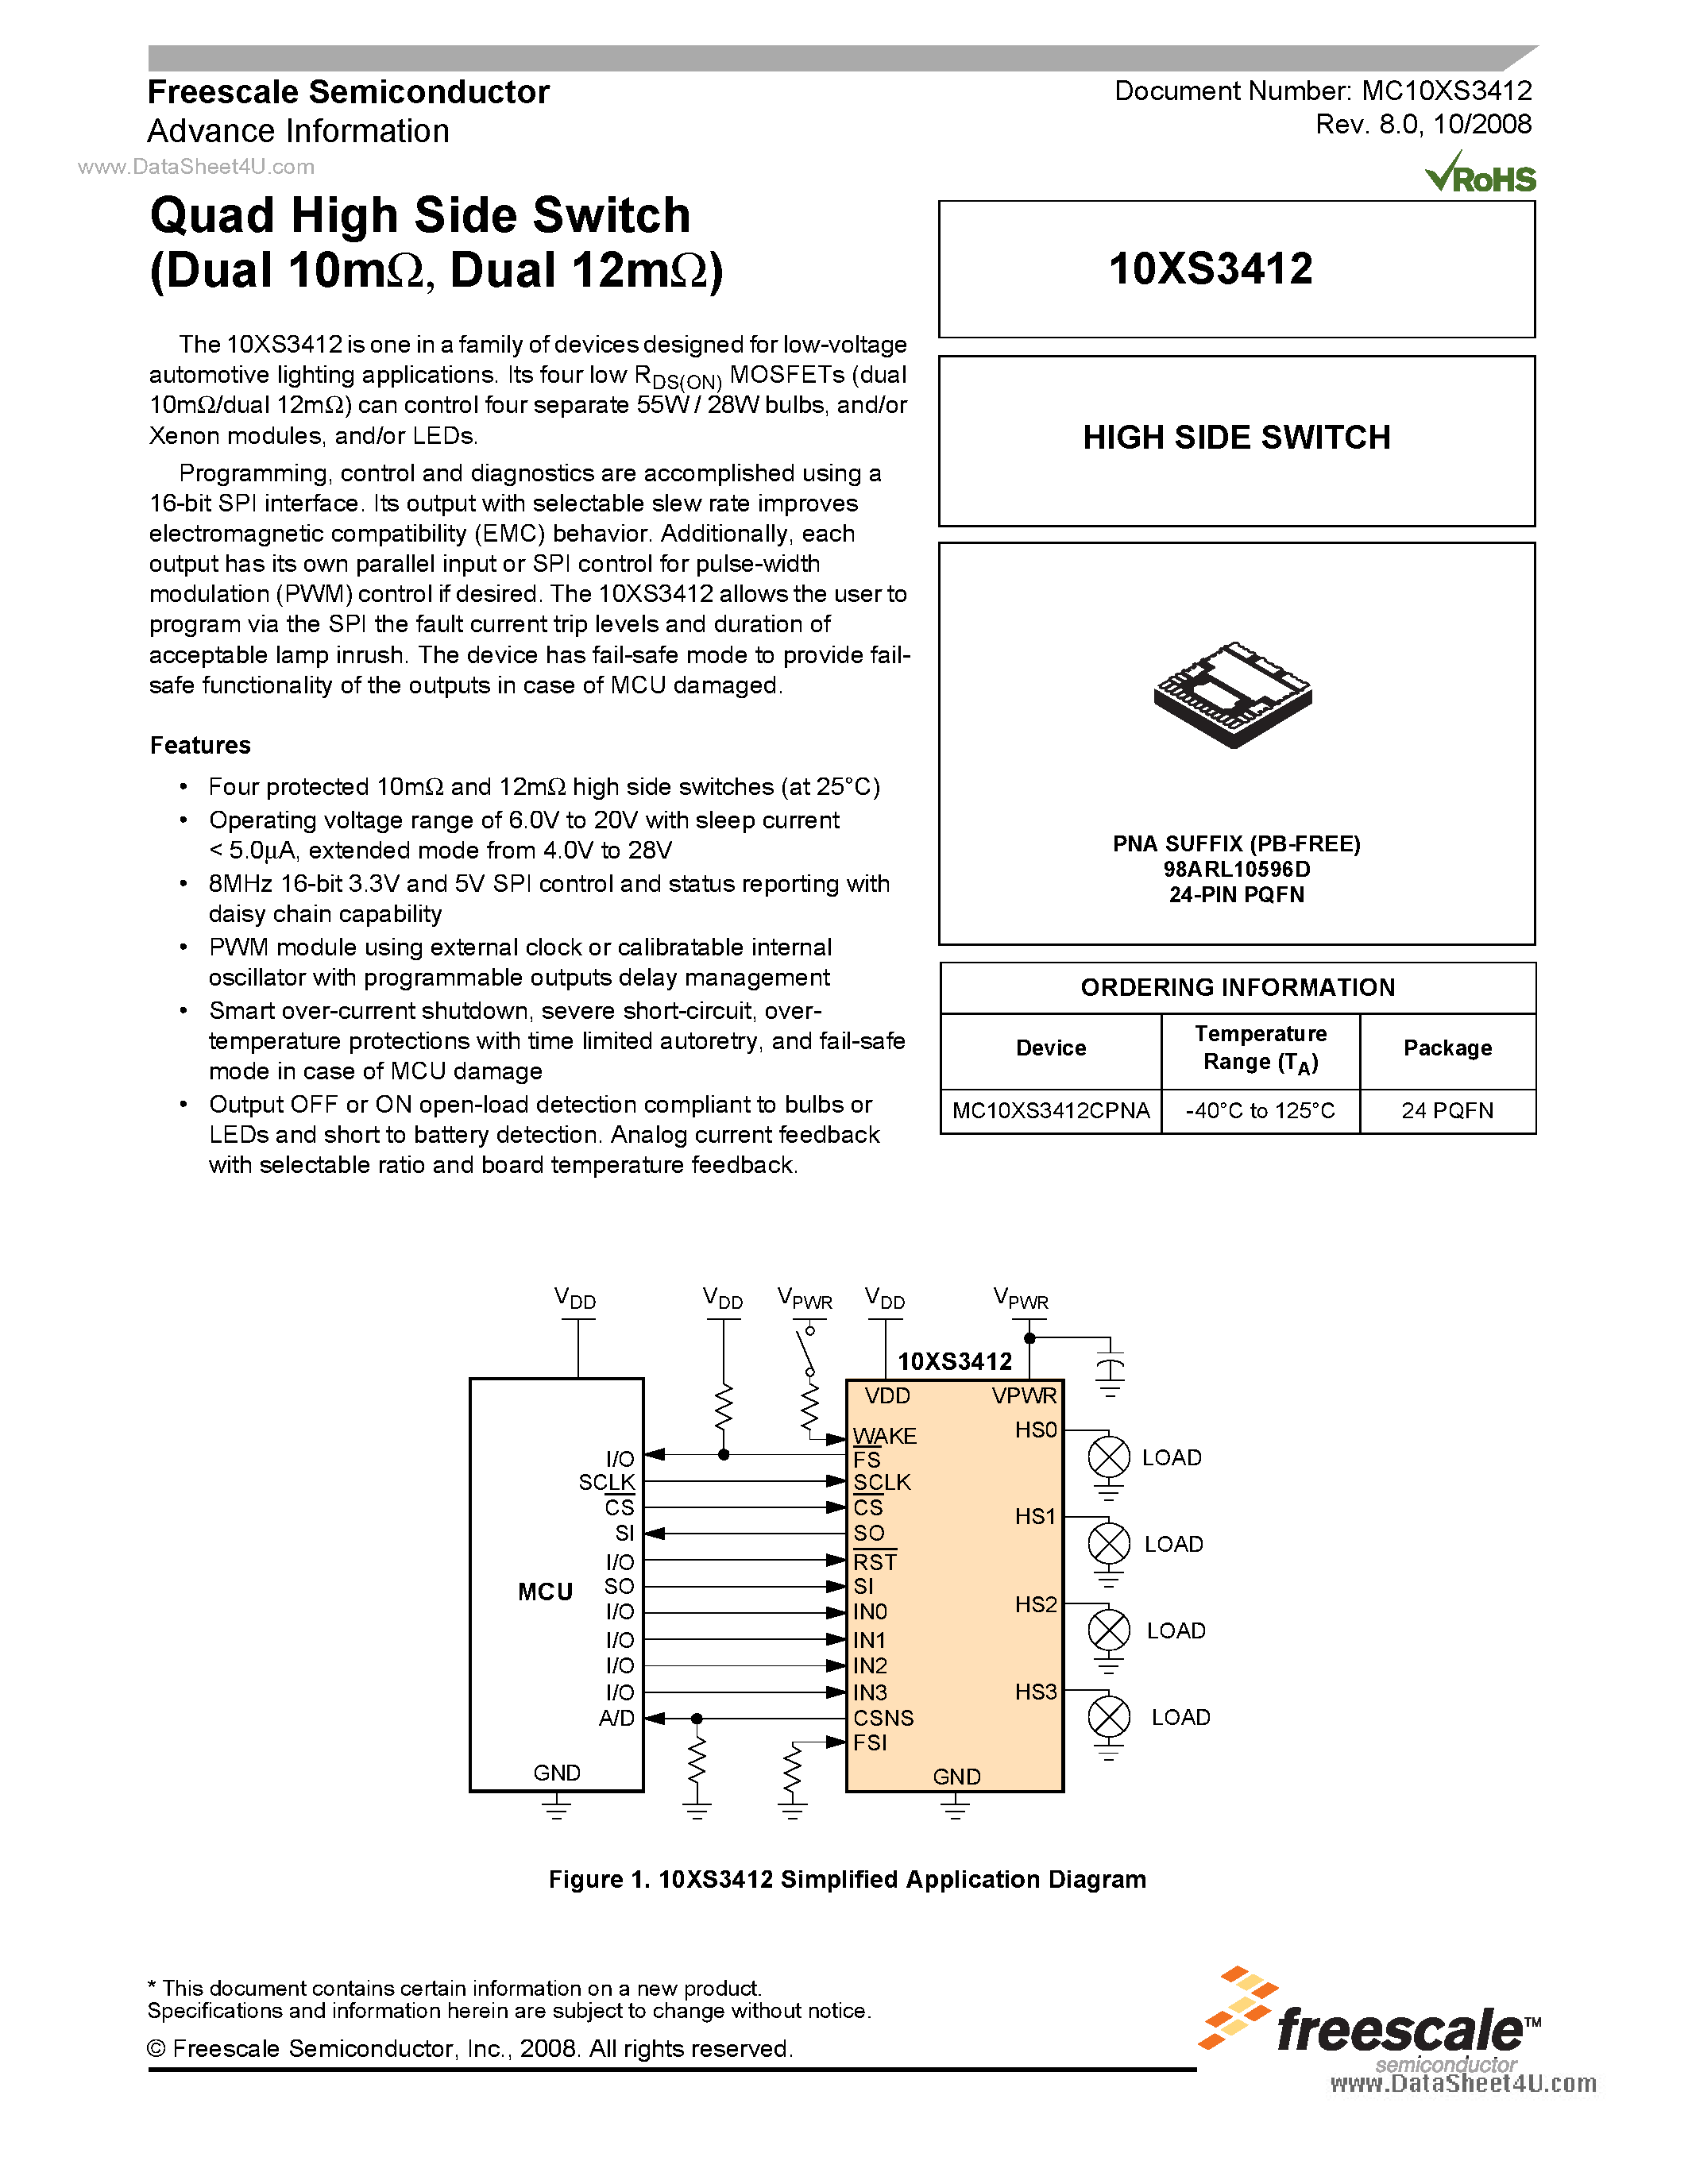 Даташит MC10XS3412 - Quad High Side Switch страница 1